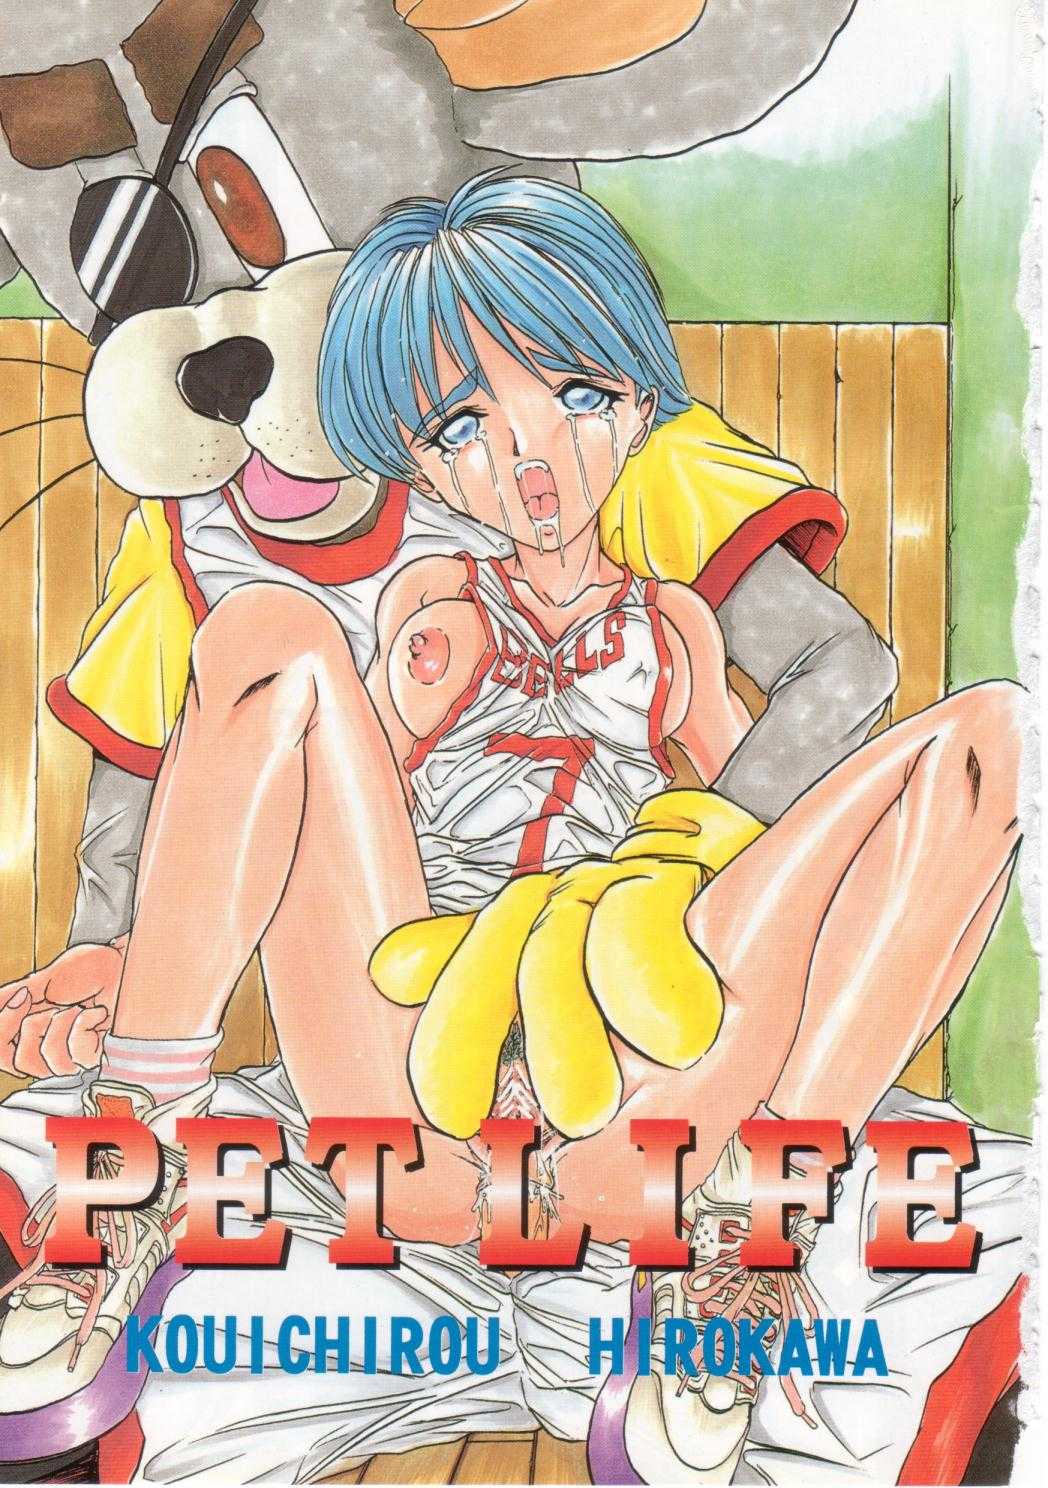 [Hirokawa Kouichirou] PET LIFE 